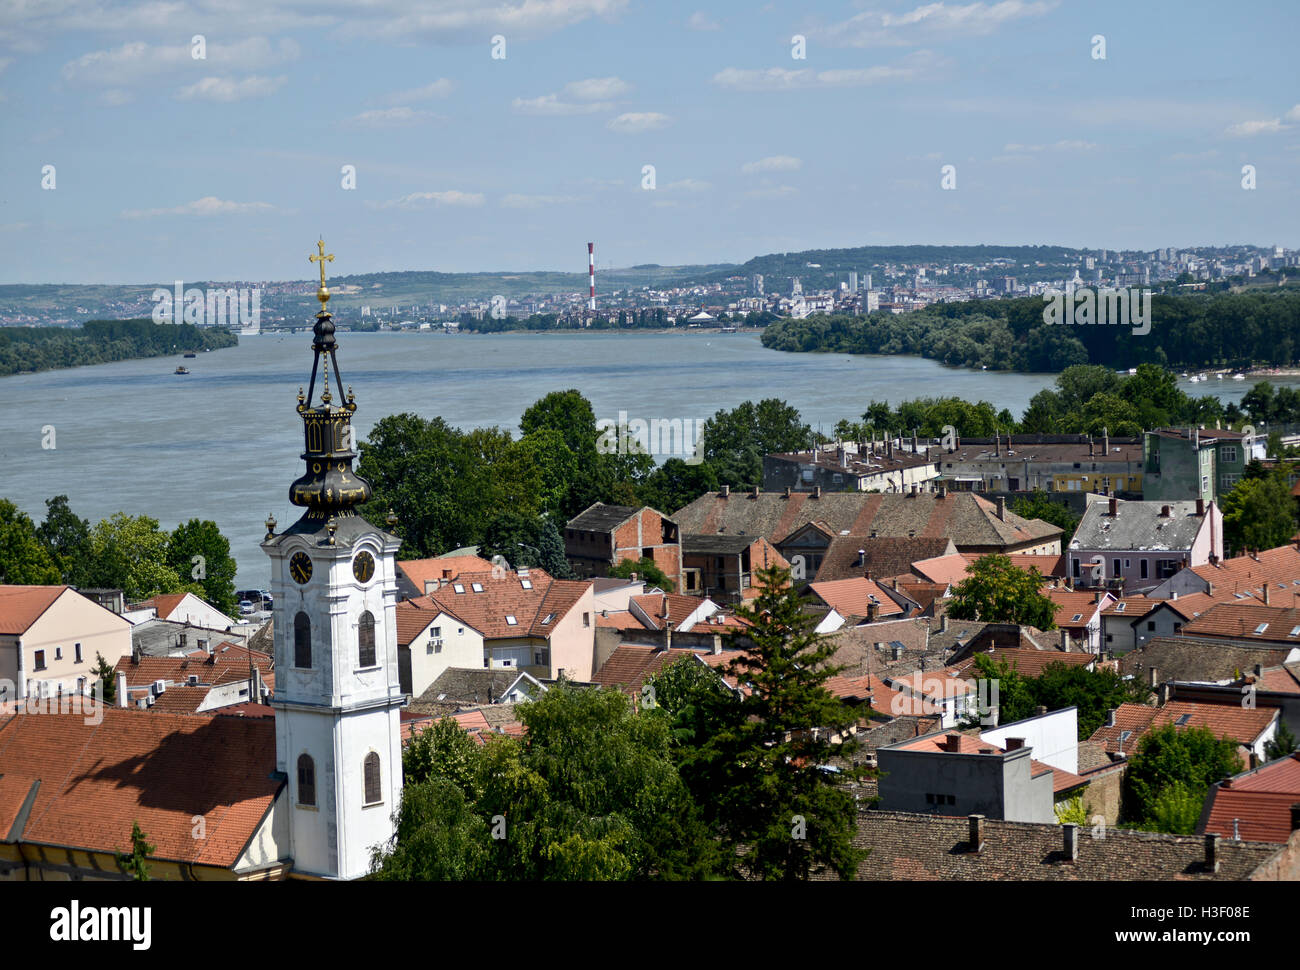 Vista aérea de Belgrado, Serbia. Río Sava y distrito de Zemun. Foto de stock